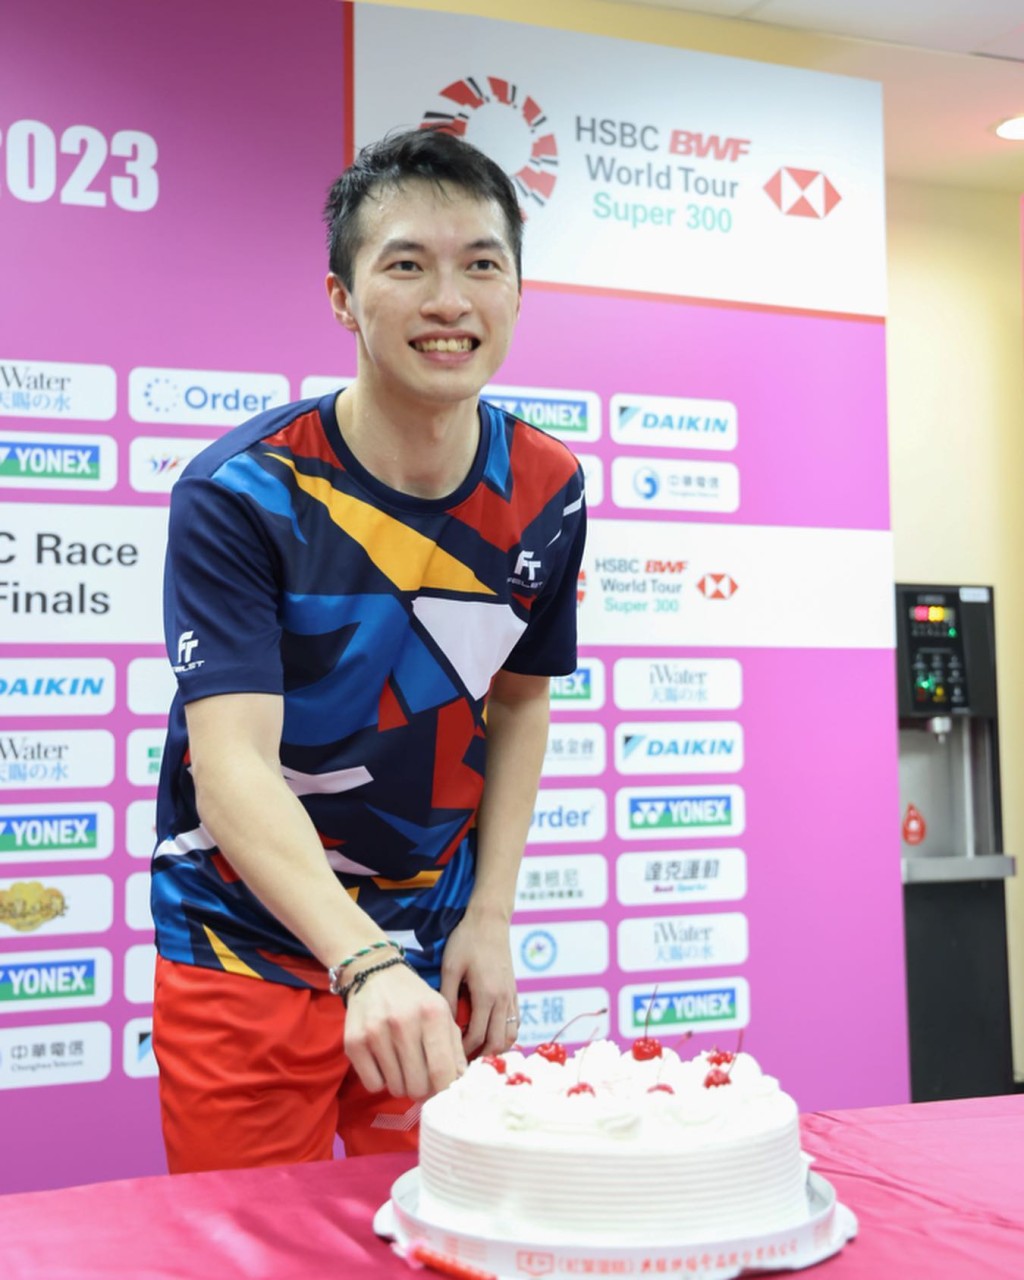 香港男子羽球运动员伍家朗。